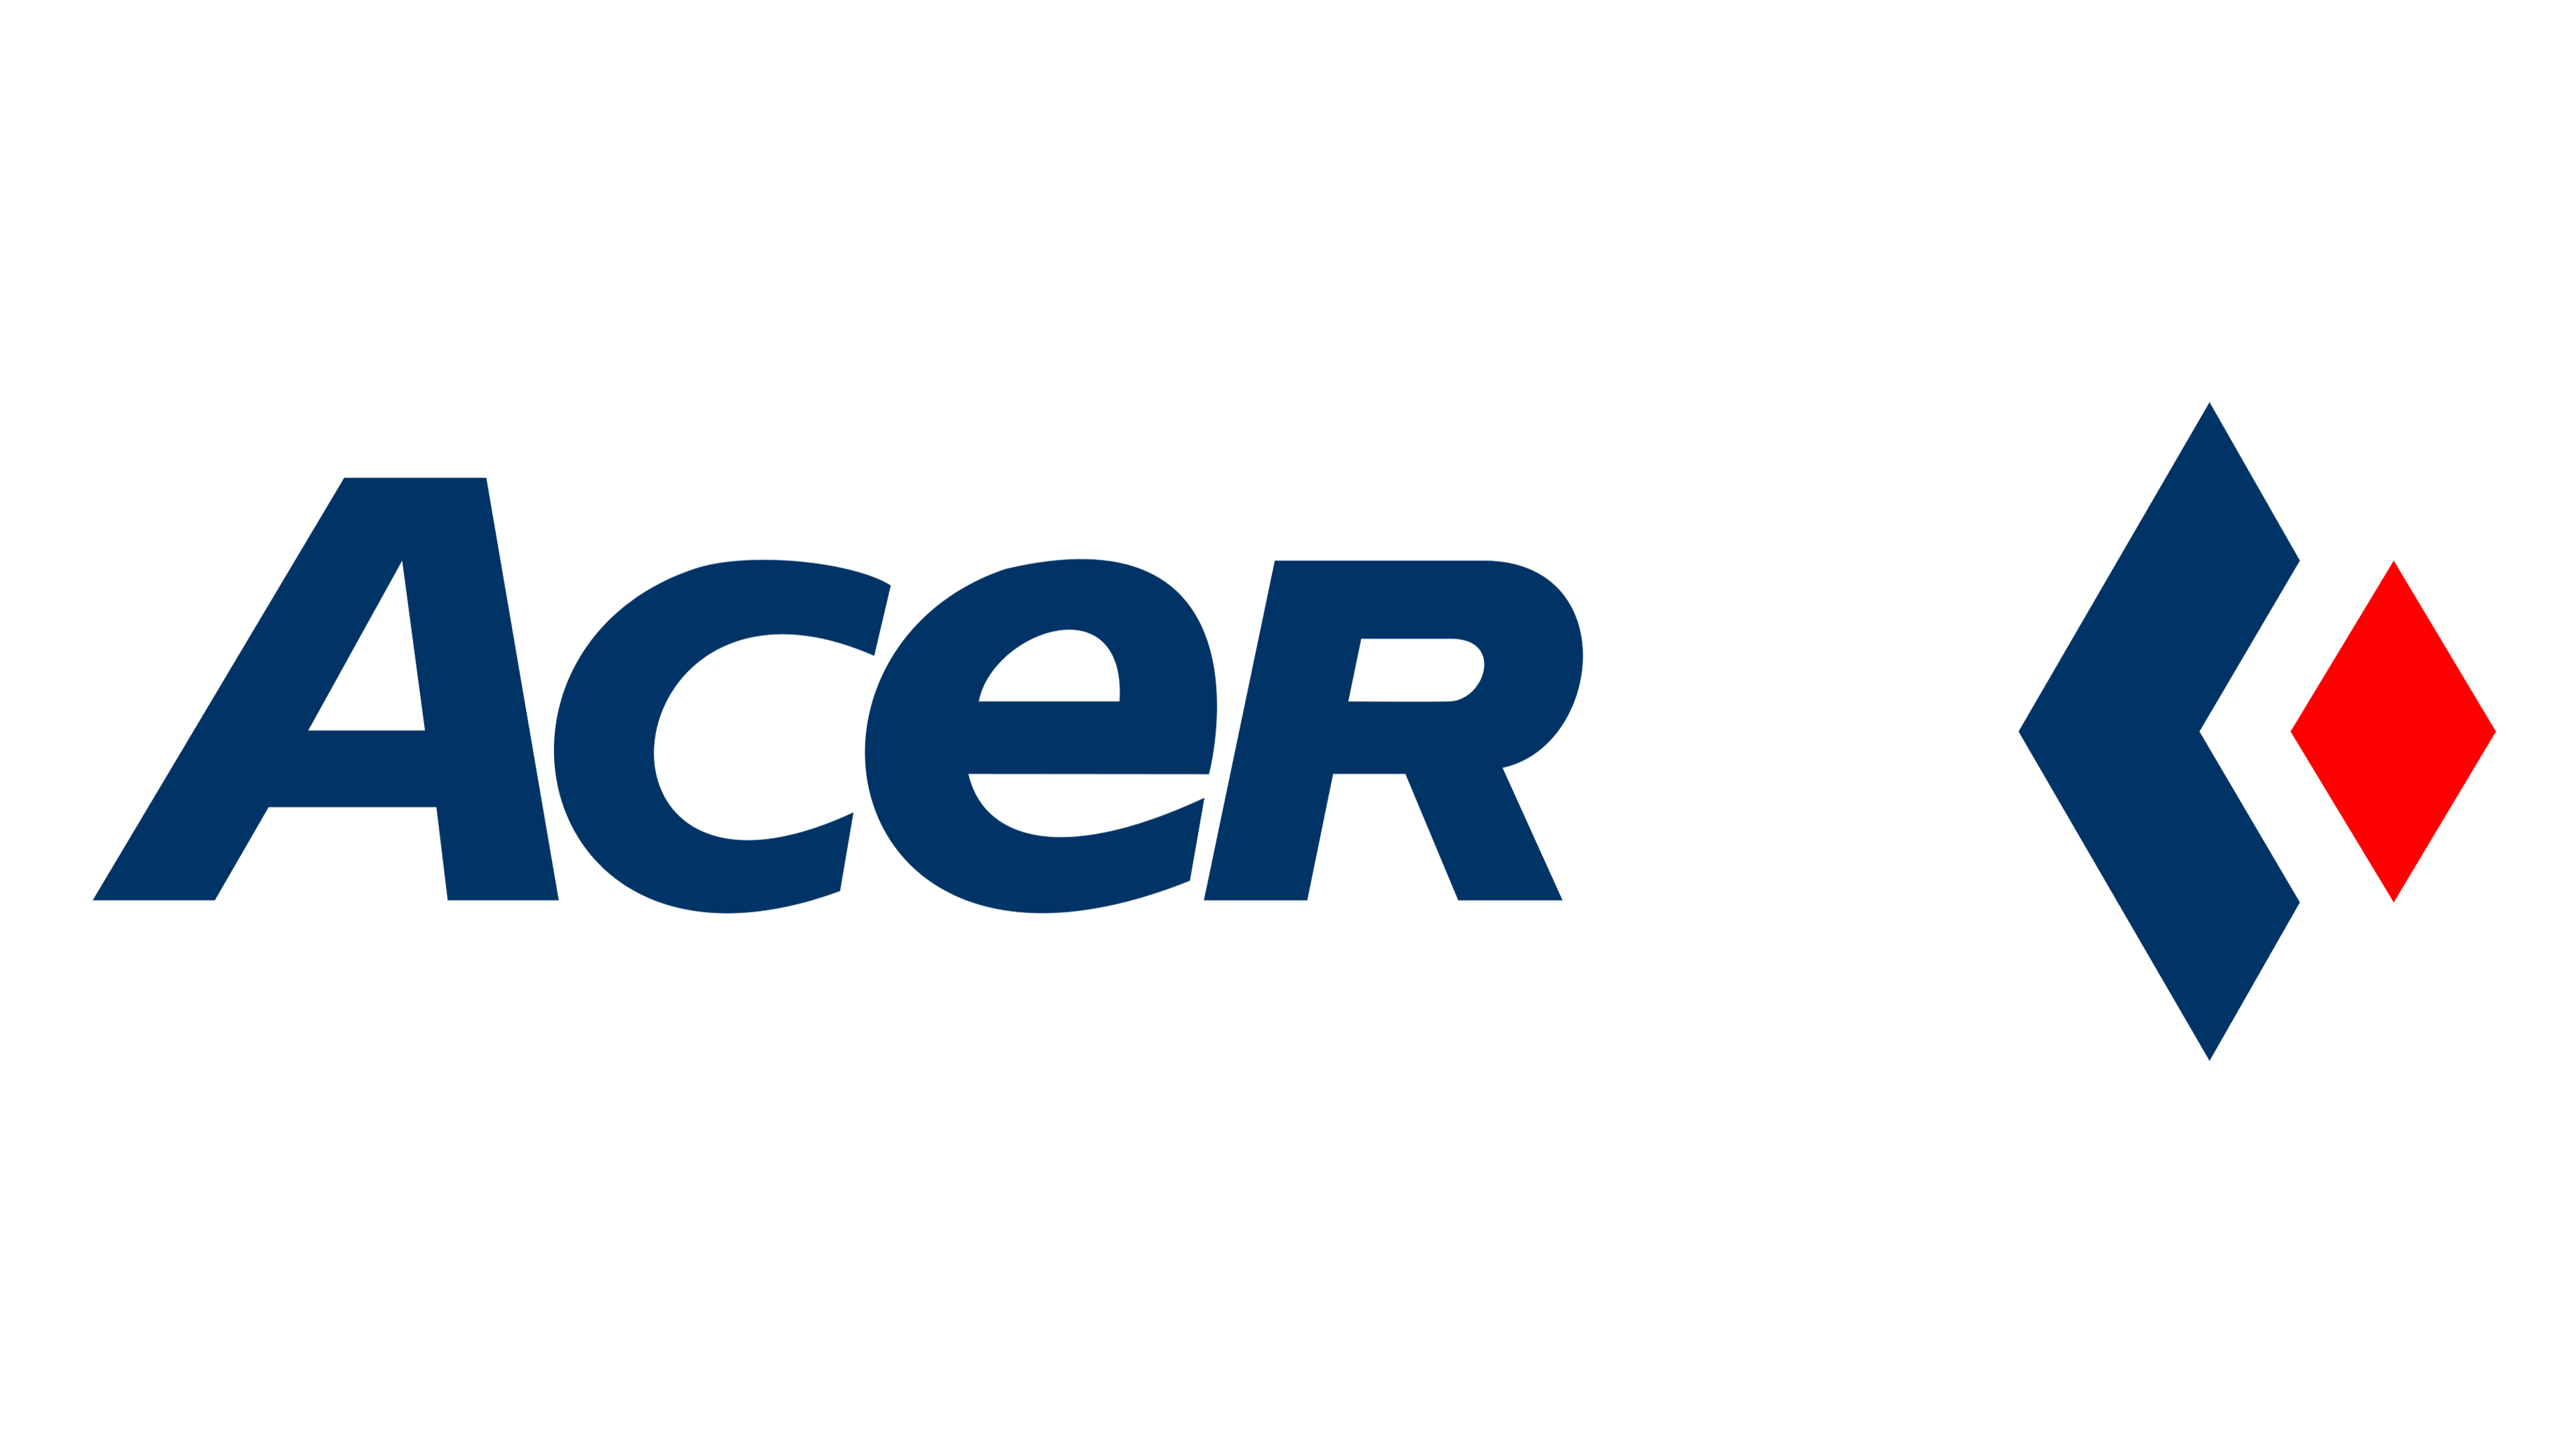 acer laptop logos